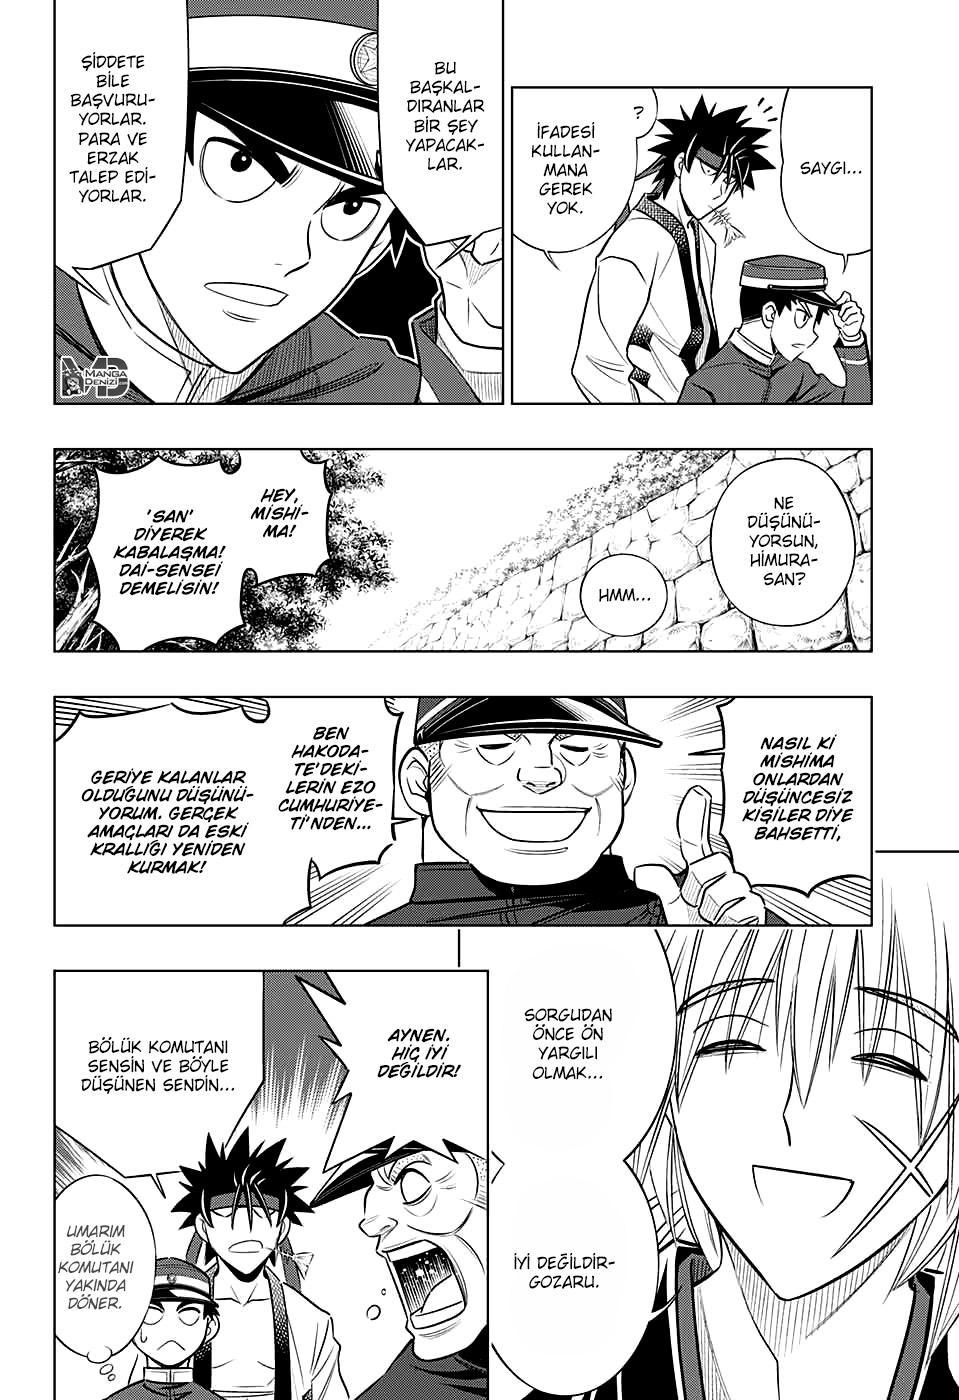 Rurouni Kenshin: Hokkaido Arc mangasının 08 bölümünün 3. sayfasını okuyorsunuz.